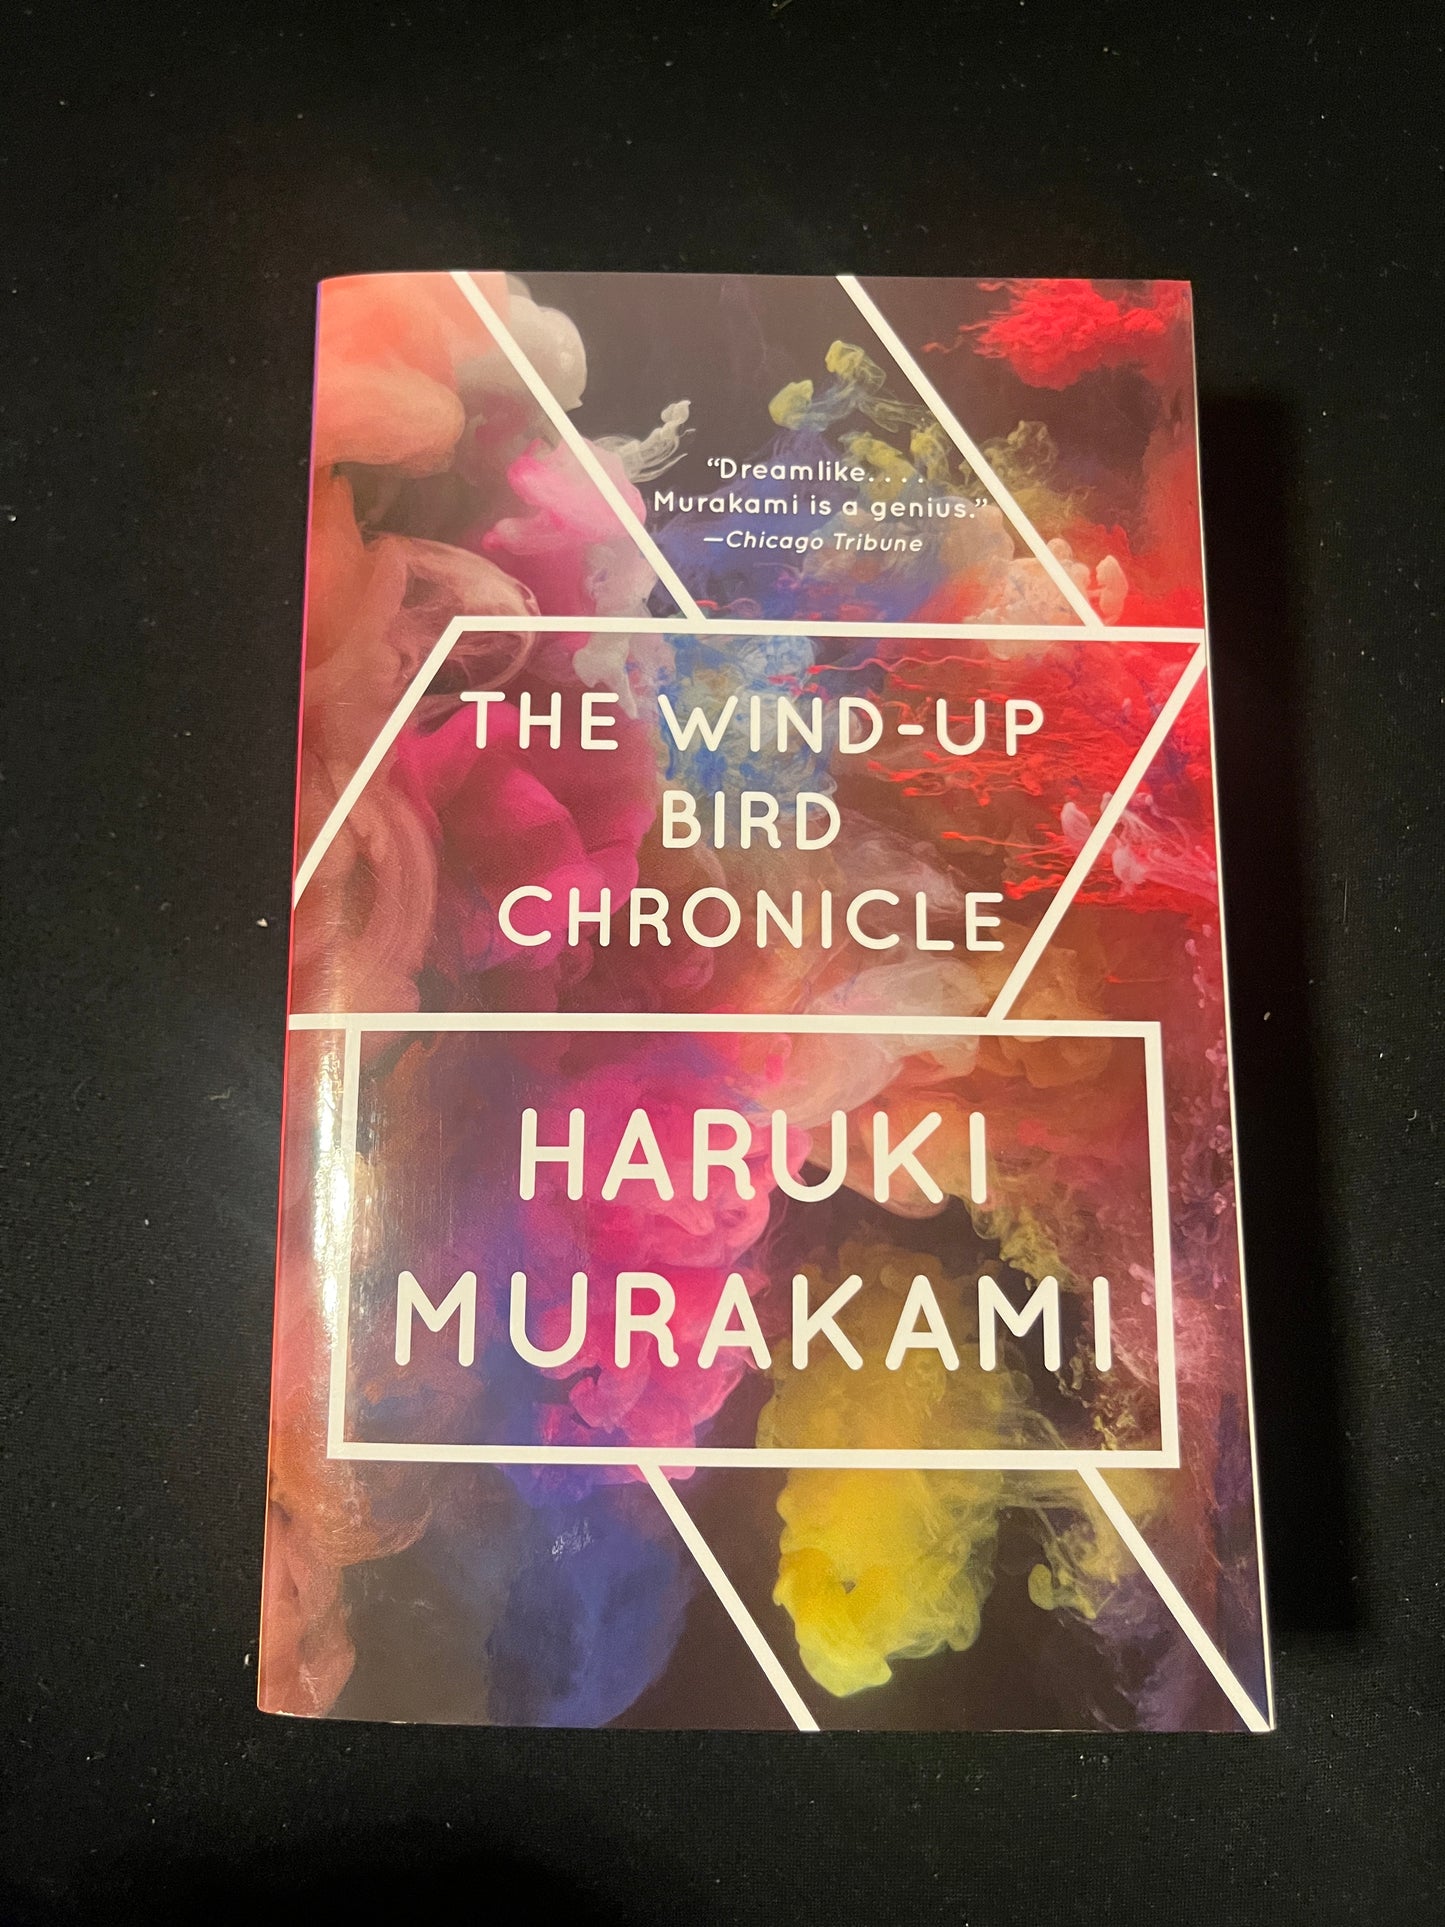 THE WIND-UP BIRD CHRONICLE by Haruki Murakami